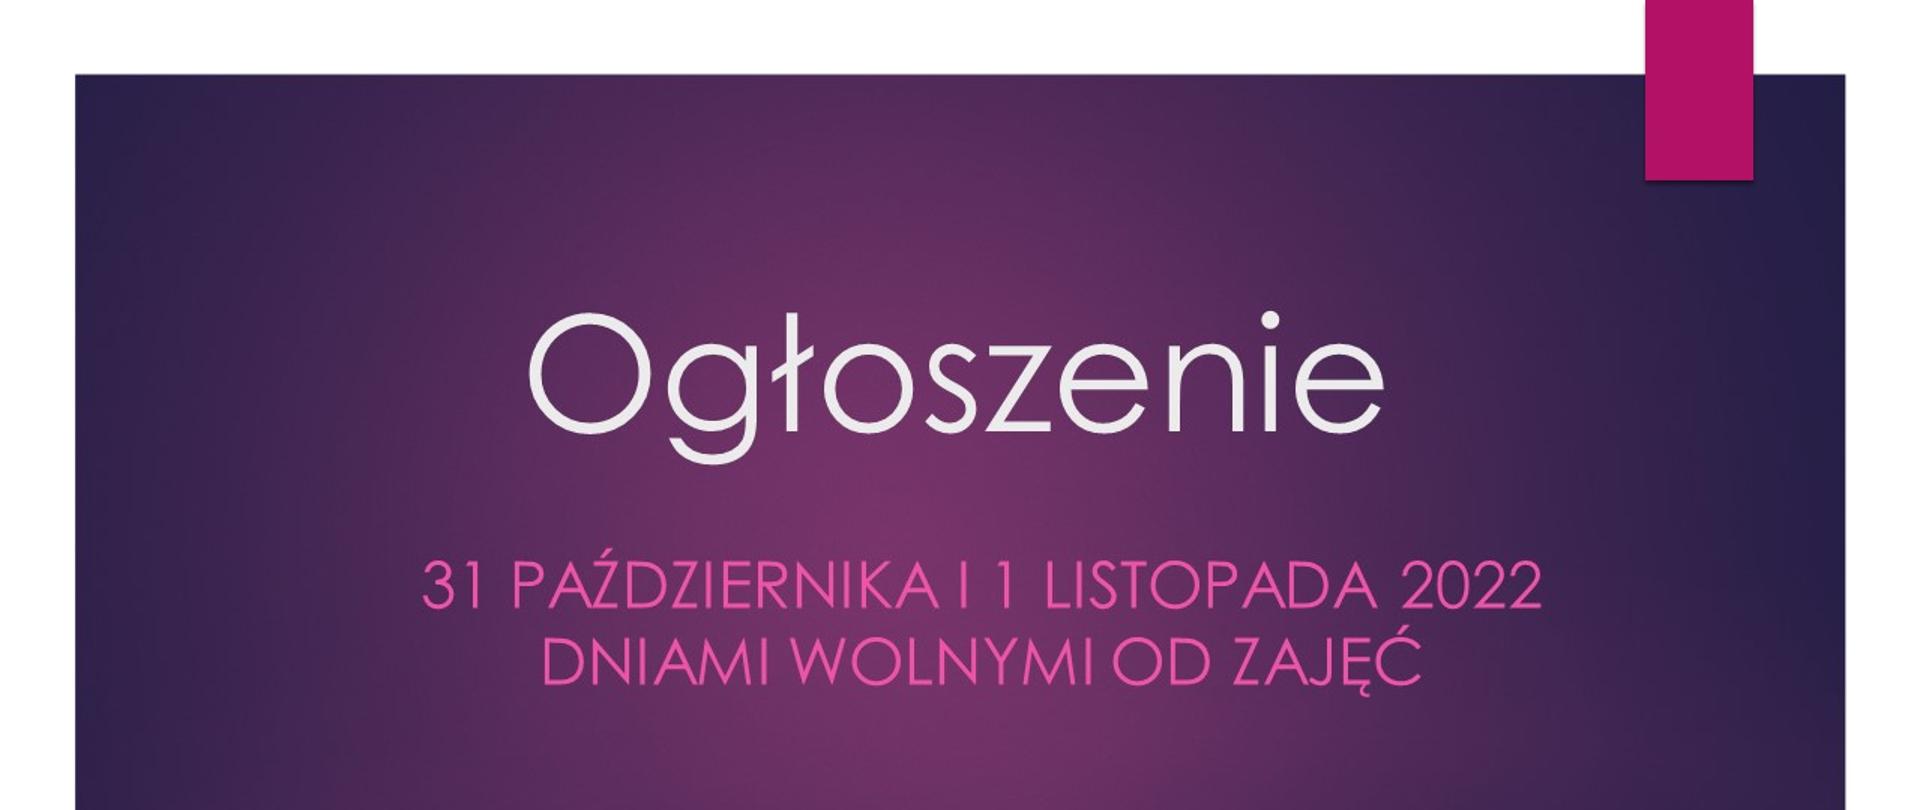 Plakat tło fioletowe z białym napisem OGŁOSZENIE i purpurowym 31 października i 1 listopada 2022 r. dniami wolnymi od zajęć dydaktycznych